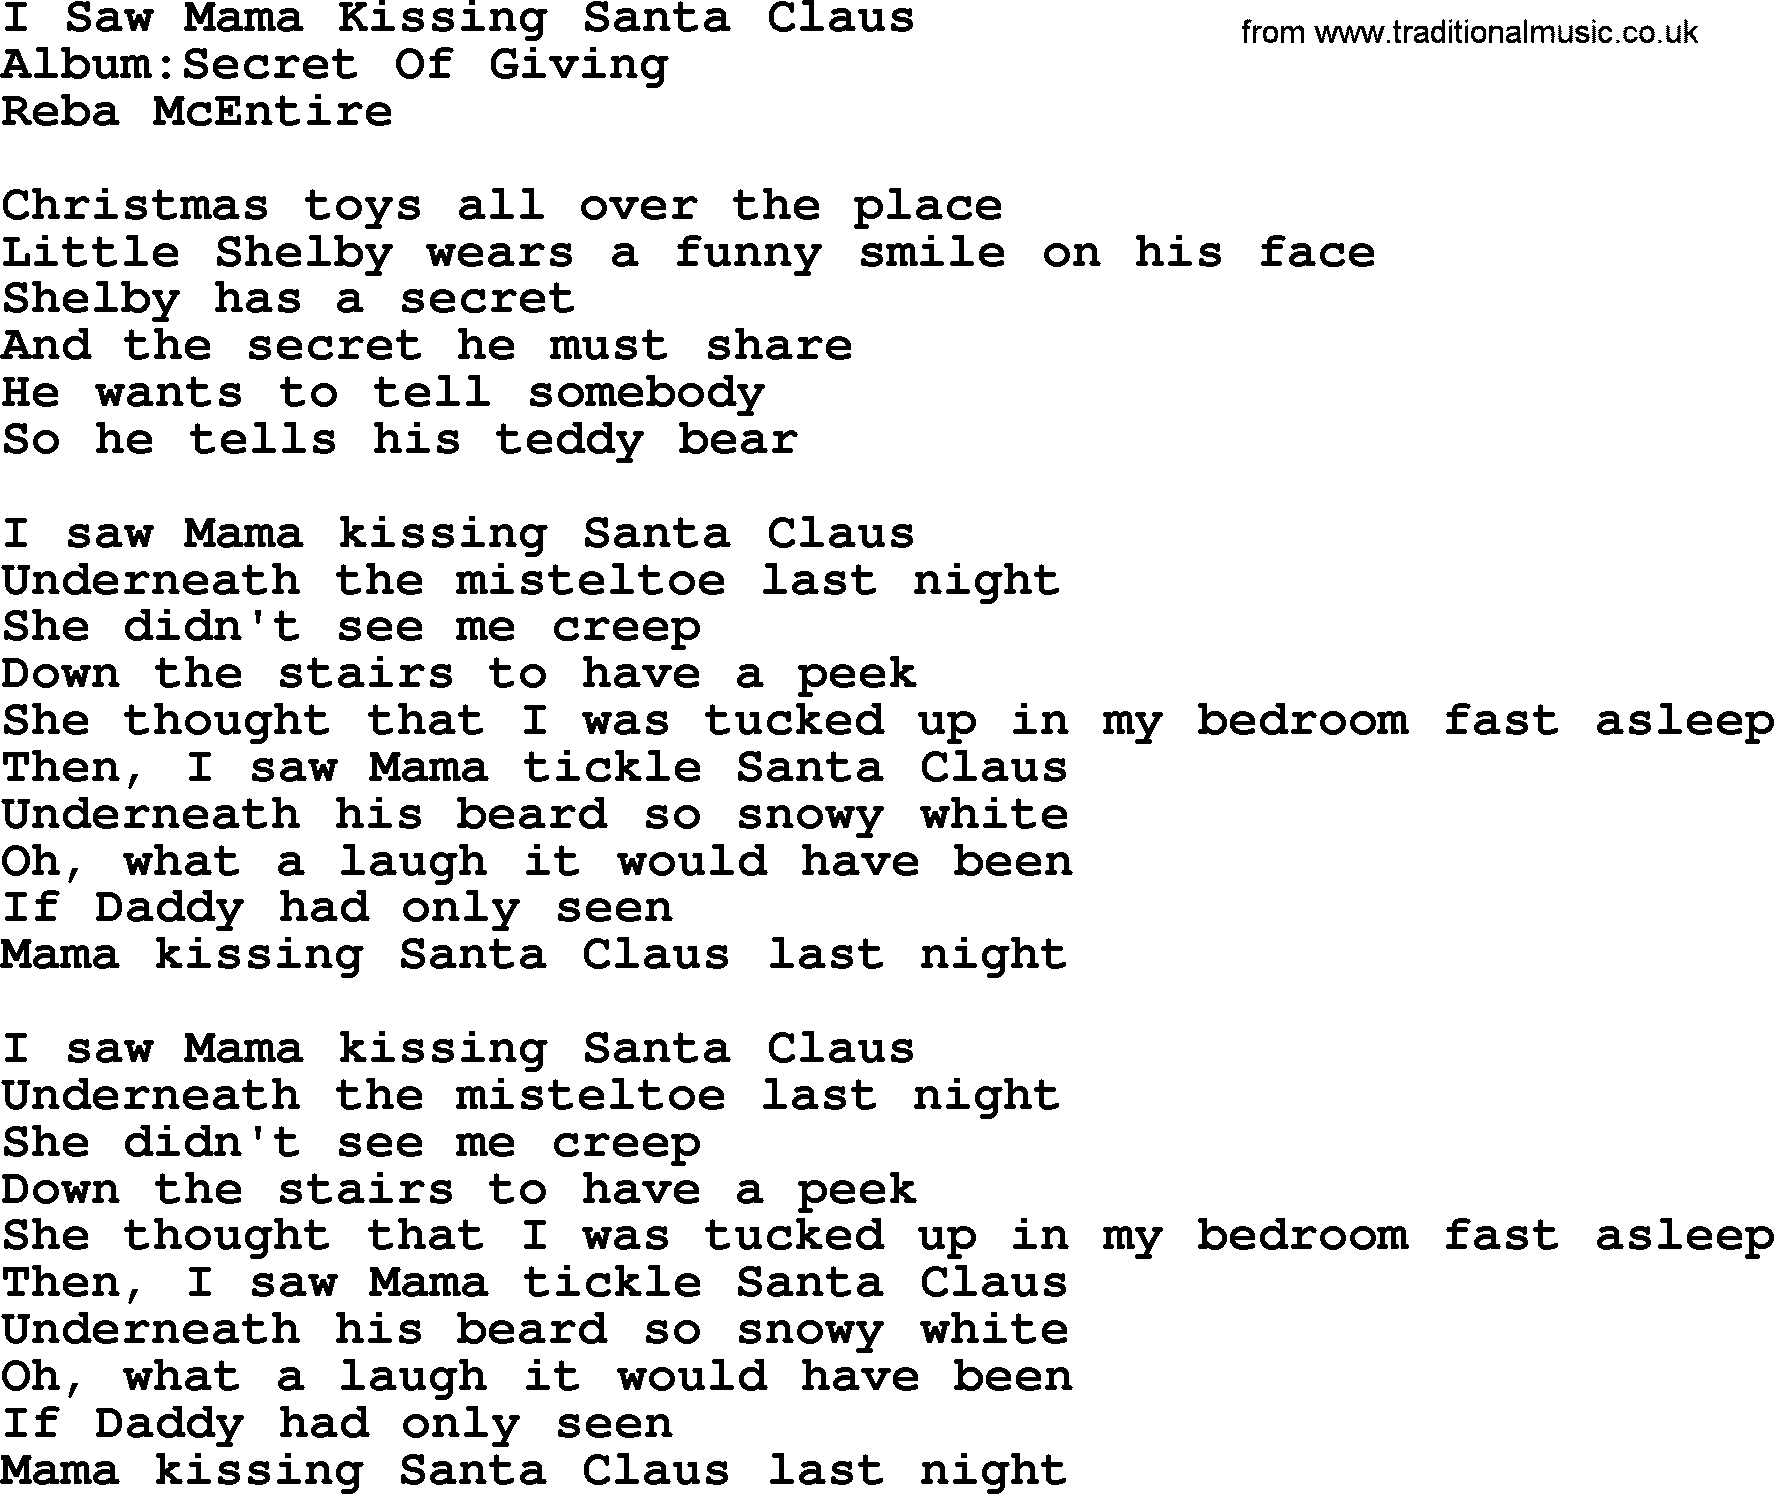 Reba McEntire song: I Saw Mama Kissing Santa Claus lyrics